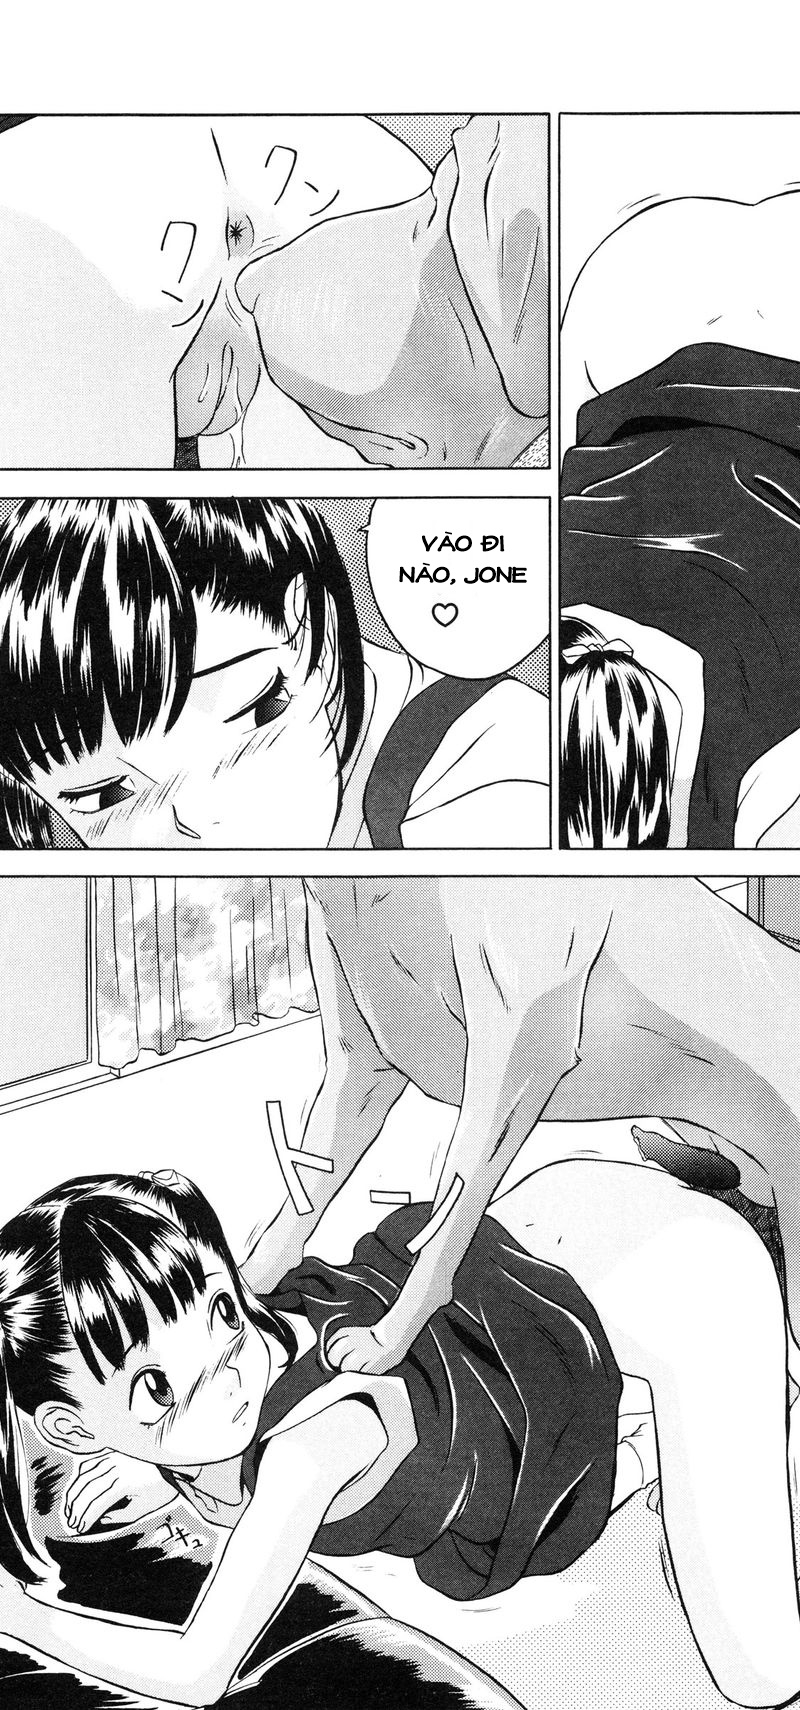 [Loli] Lolita Girls Collection Chapter 3: Jone, Tôi, và Onii-chan - Trang 15